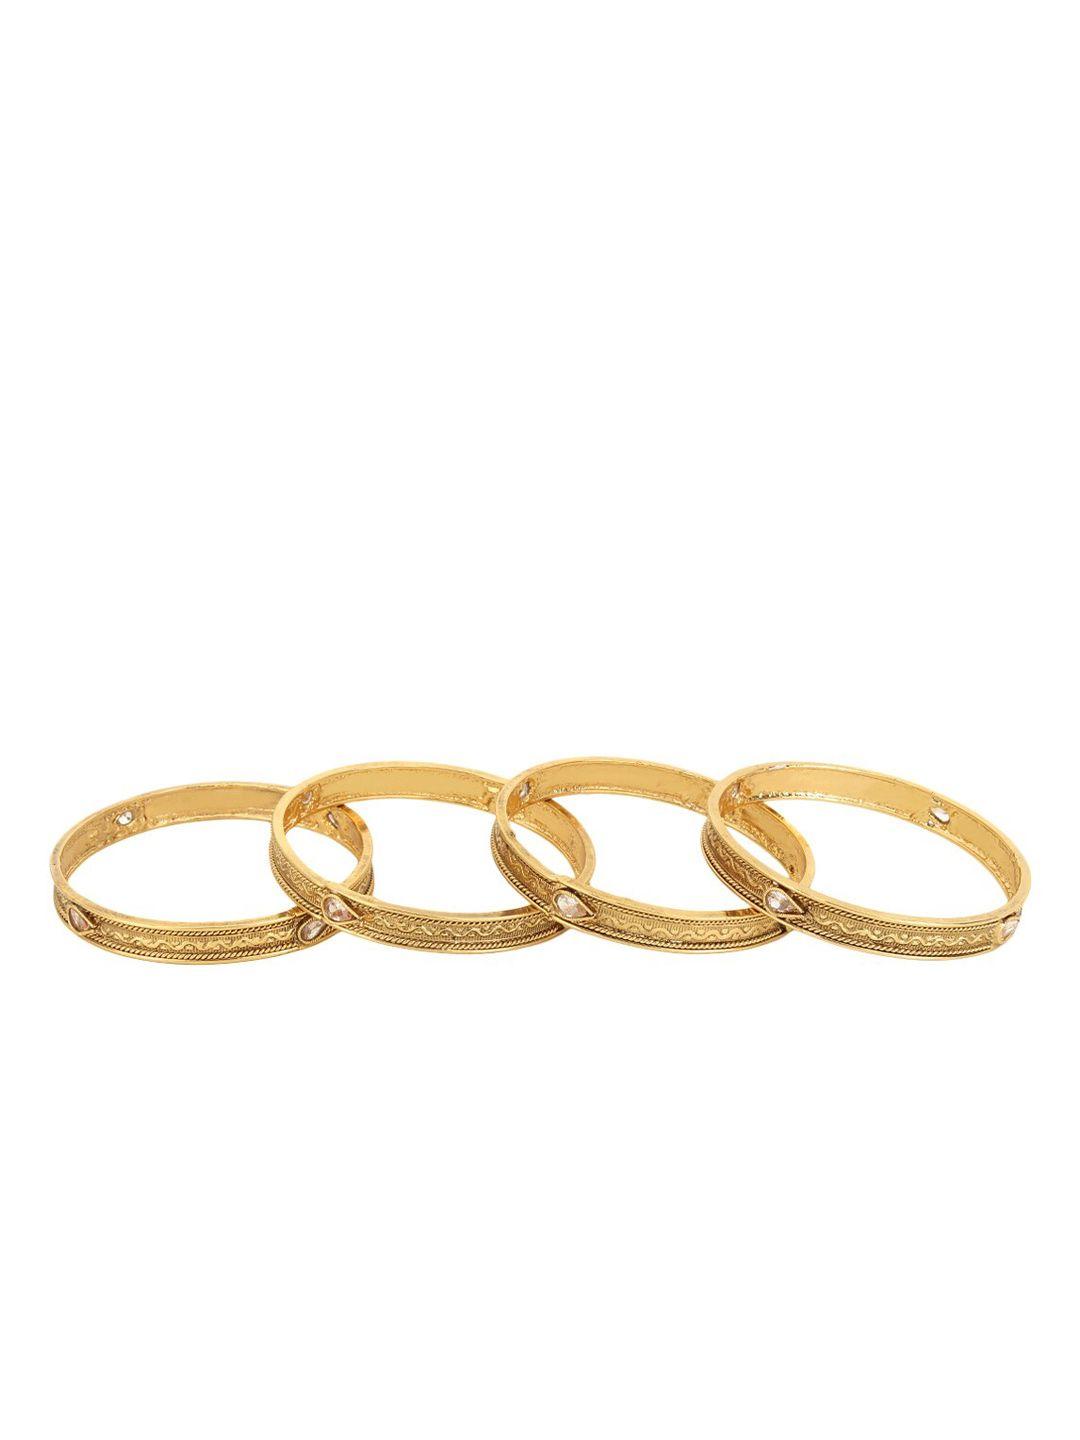 adwitiya collection set of 4 gold-plated stones studded bangles